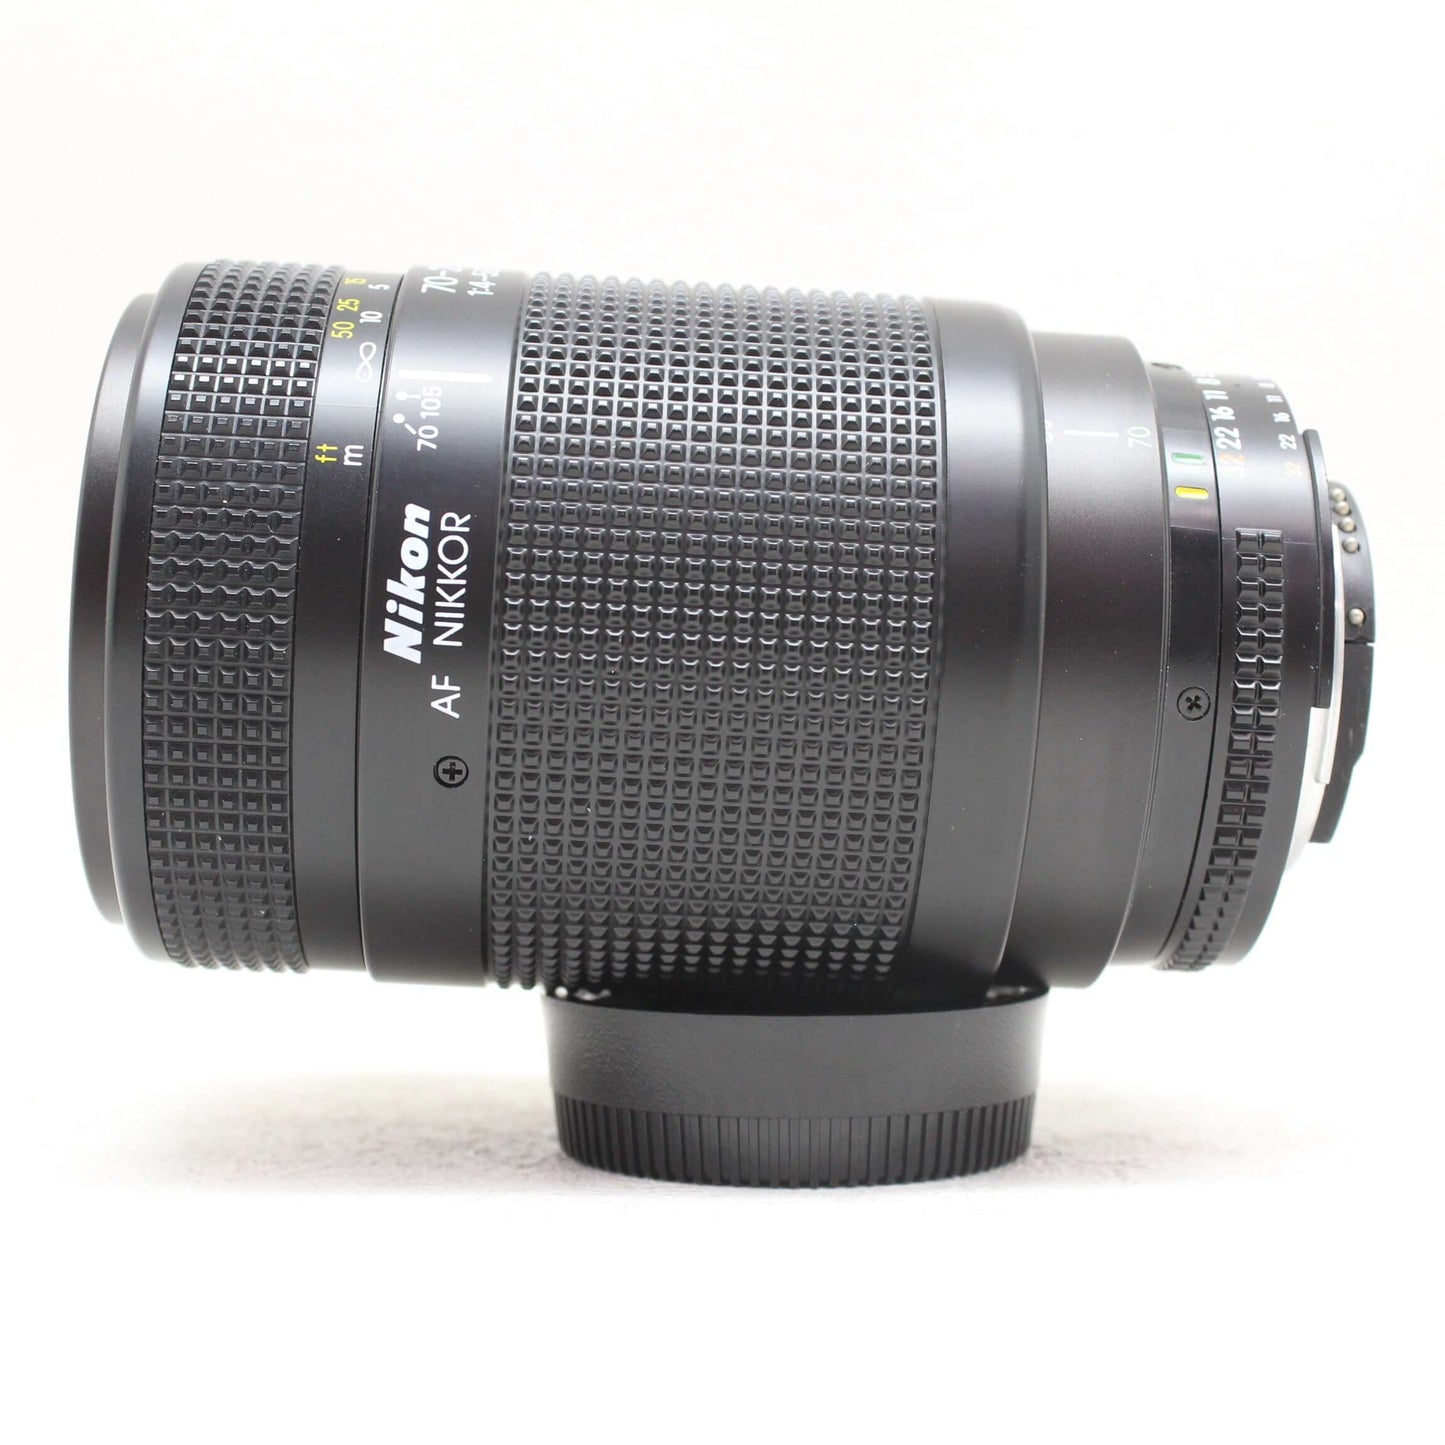 中古品 Nikon AF 70-210mm F4-5.6D